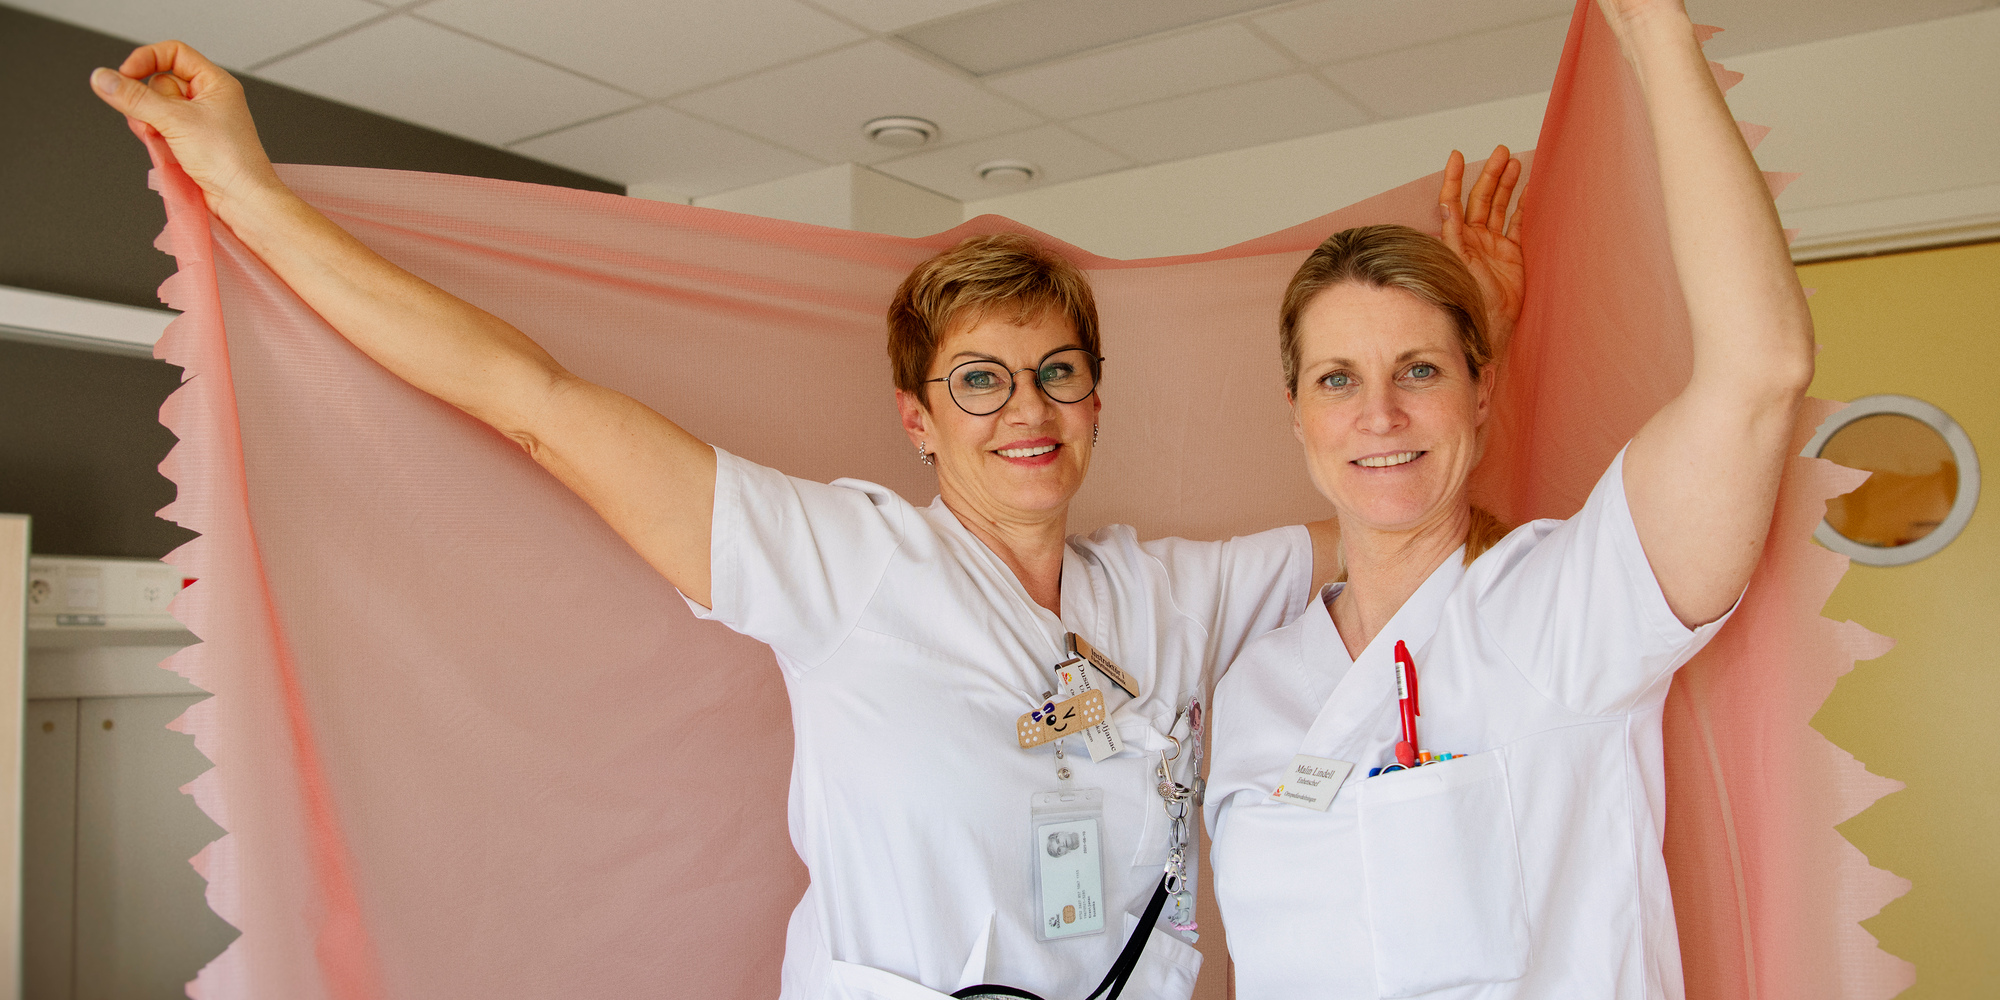 Dusanka Kravljanac och Malin Lindell håller upp en rosa spilerdug i ett patientrum.